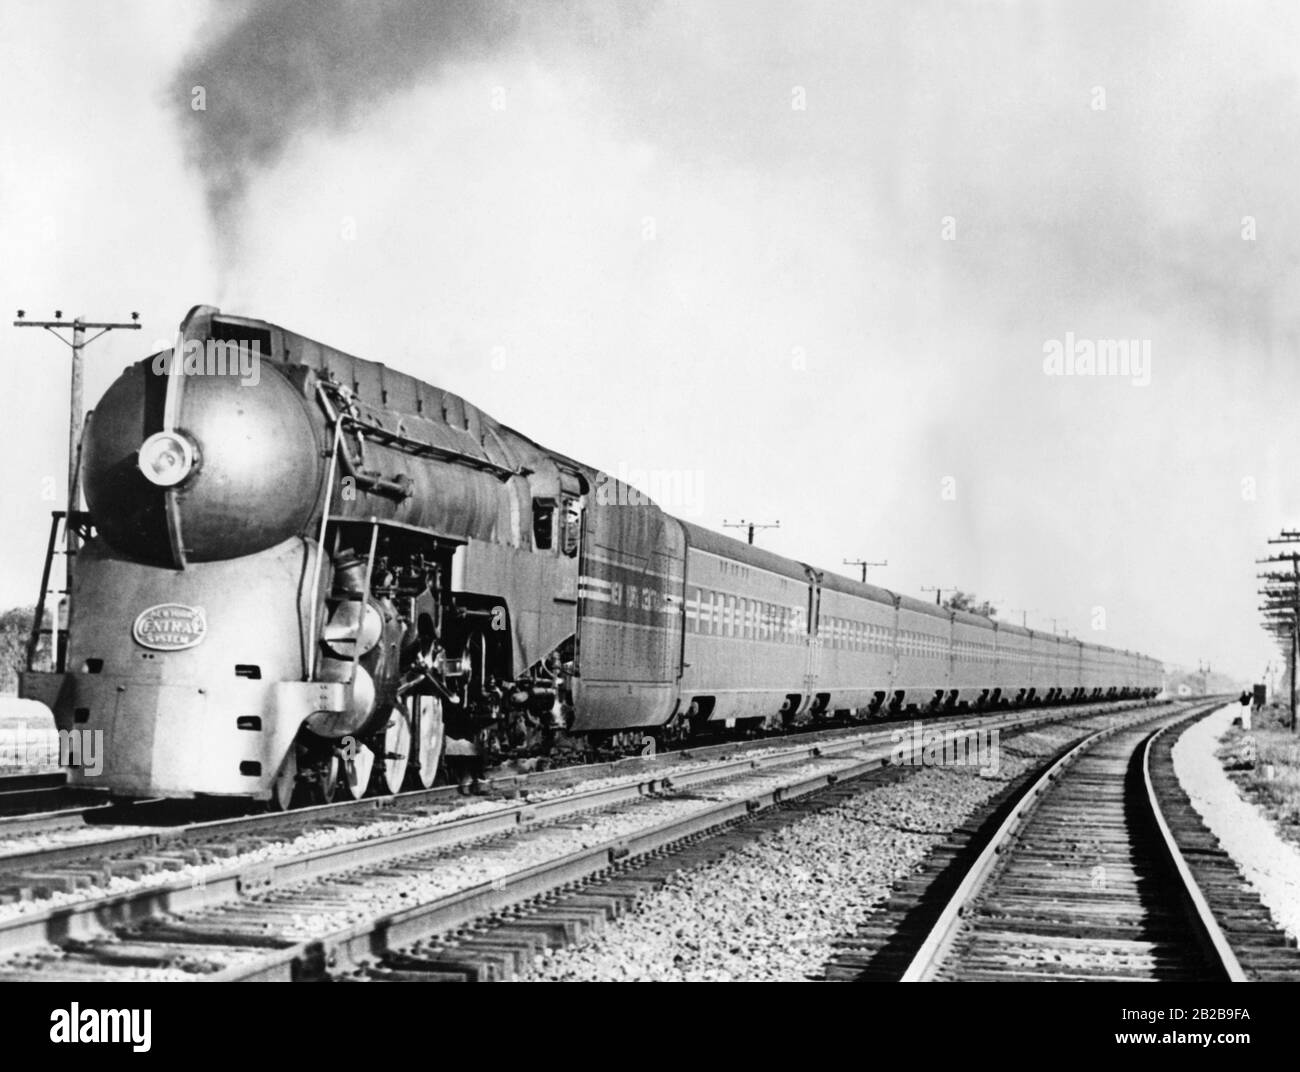 Probefahrt einer stromlinienförmigen Lok, die auf der Strecke New York - Chicago fährt. Stromlinienförmige Dampfloks vor 1945, Lokomotiven: Historisch, Eisenbahn. Stockfoto